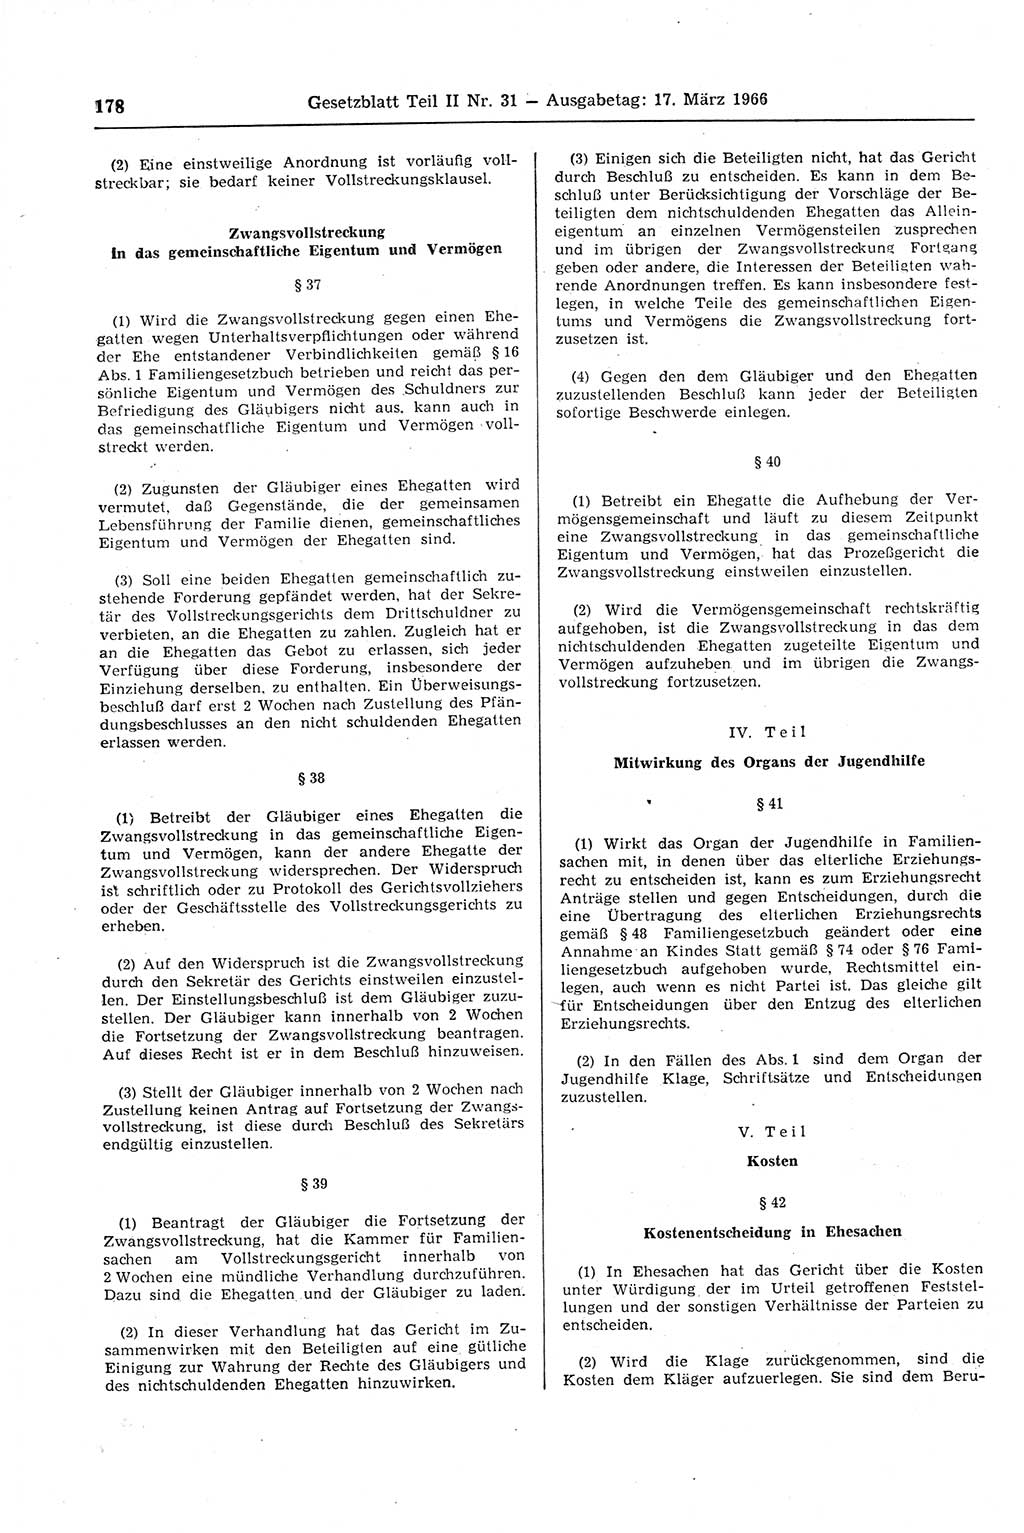 Gesetzblatt (GBl.) der Deutschen Demokratischen Republik (DDR) Teil ⅠⅠ 1966, Seite 178 (GBl. DDR ⅠⅠ 1966, S. 178)